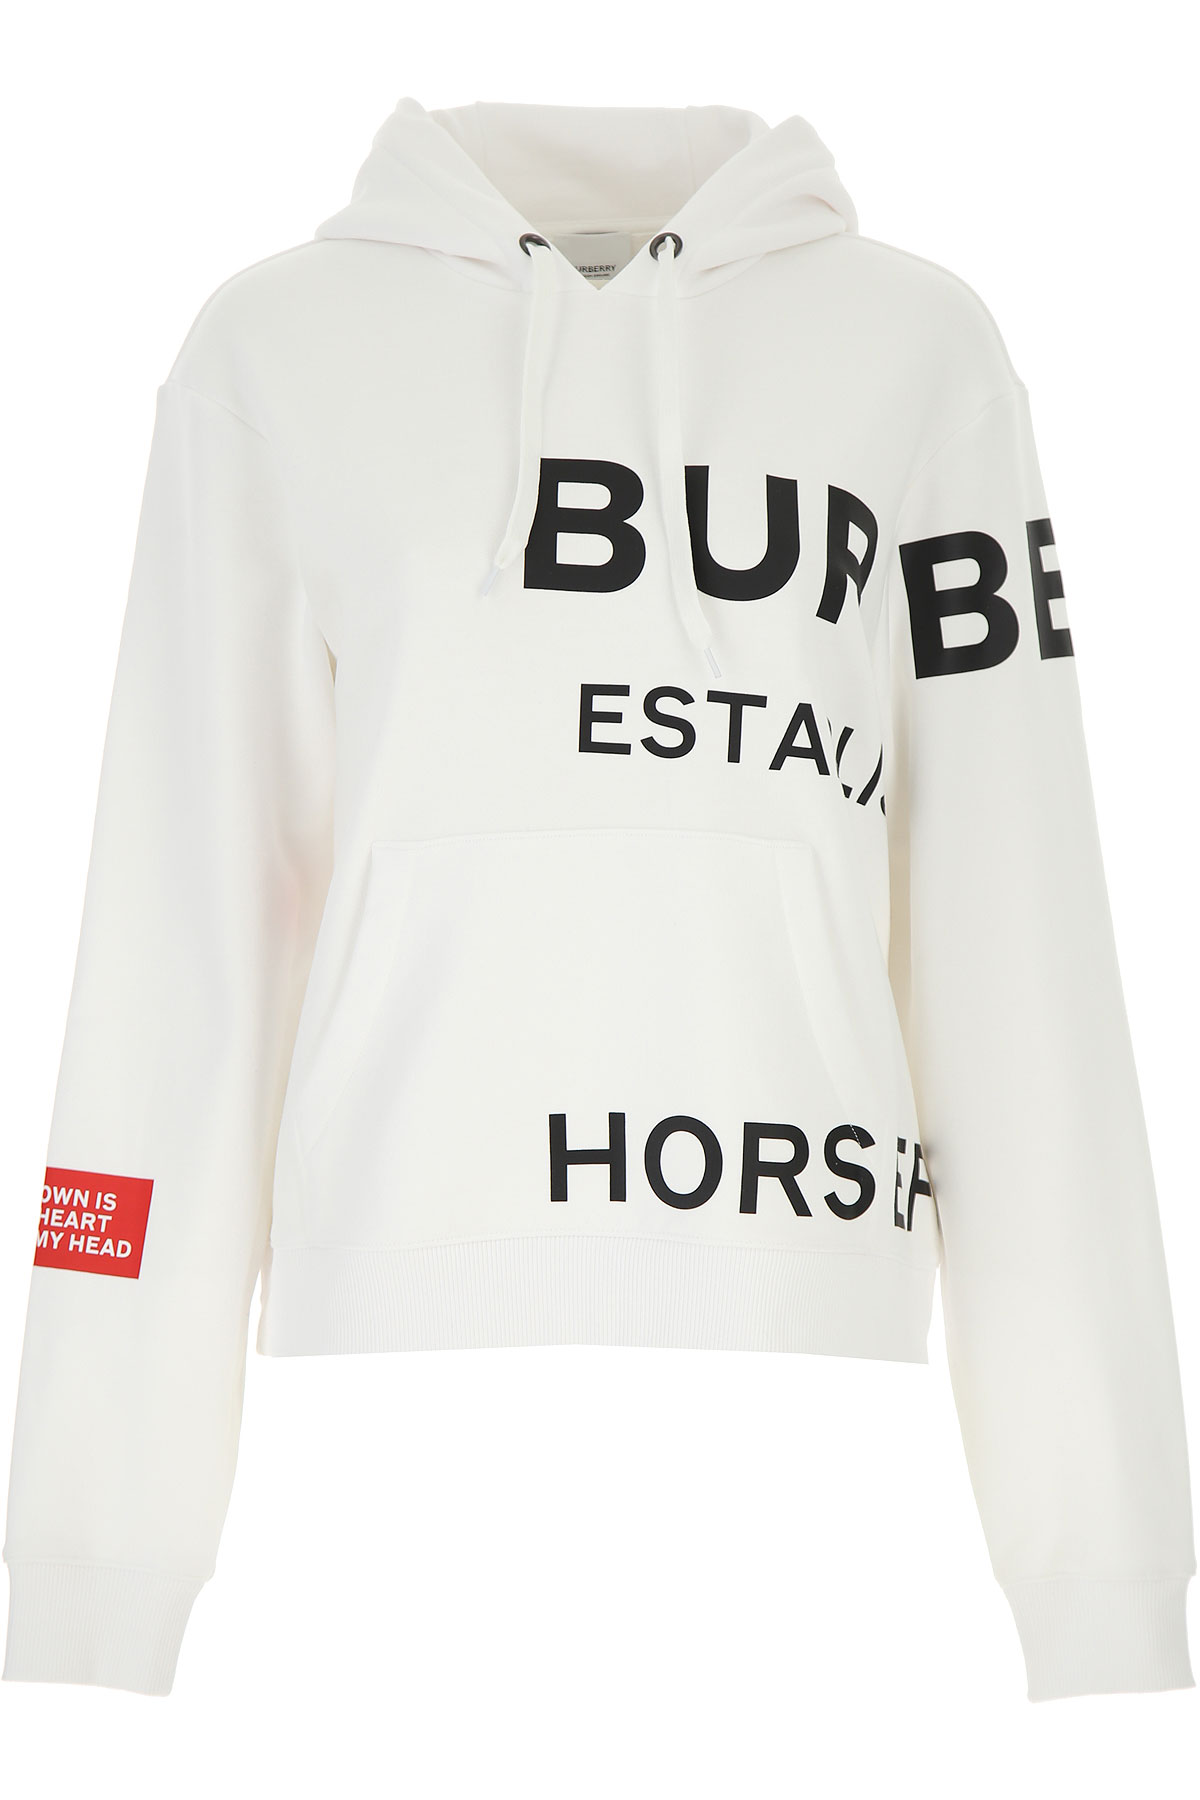 Burberry Sweatshirt für Damen, Kapuzenpulli, Hoodie, Sweats Günstig im Sale, Weiss, Baumwolle, 2017, 38 40 M